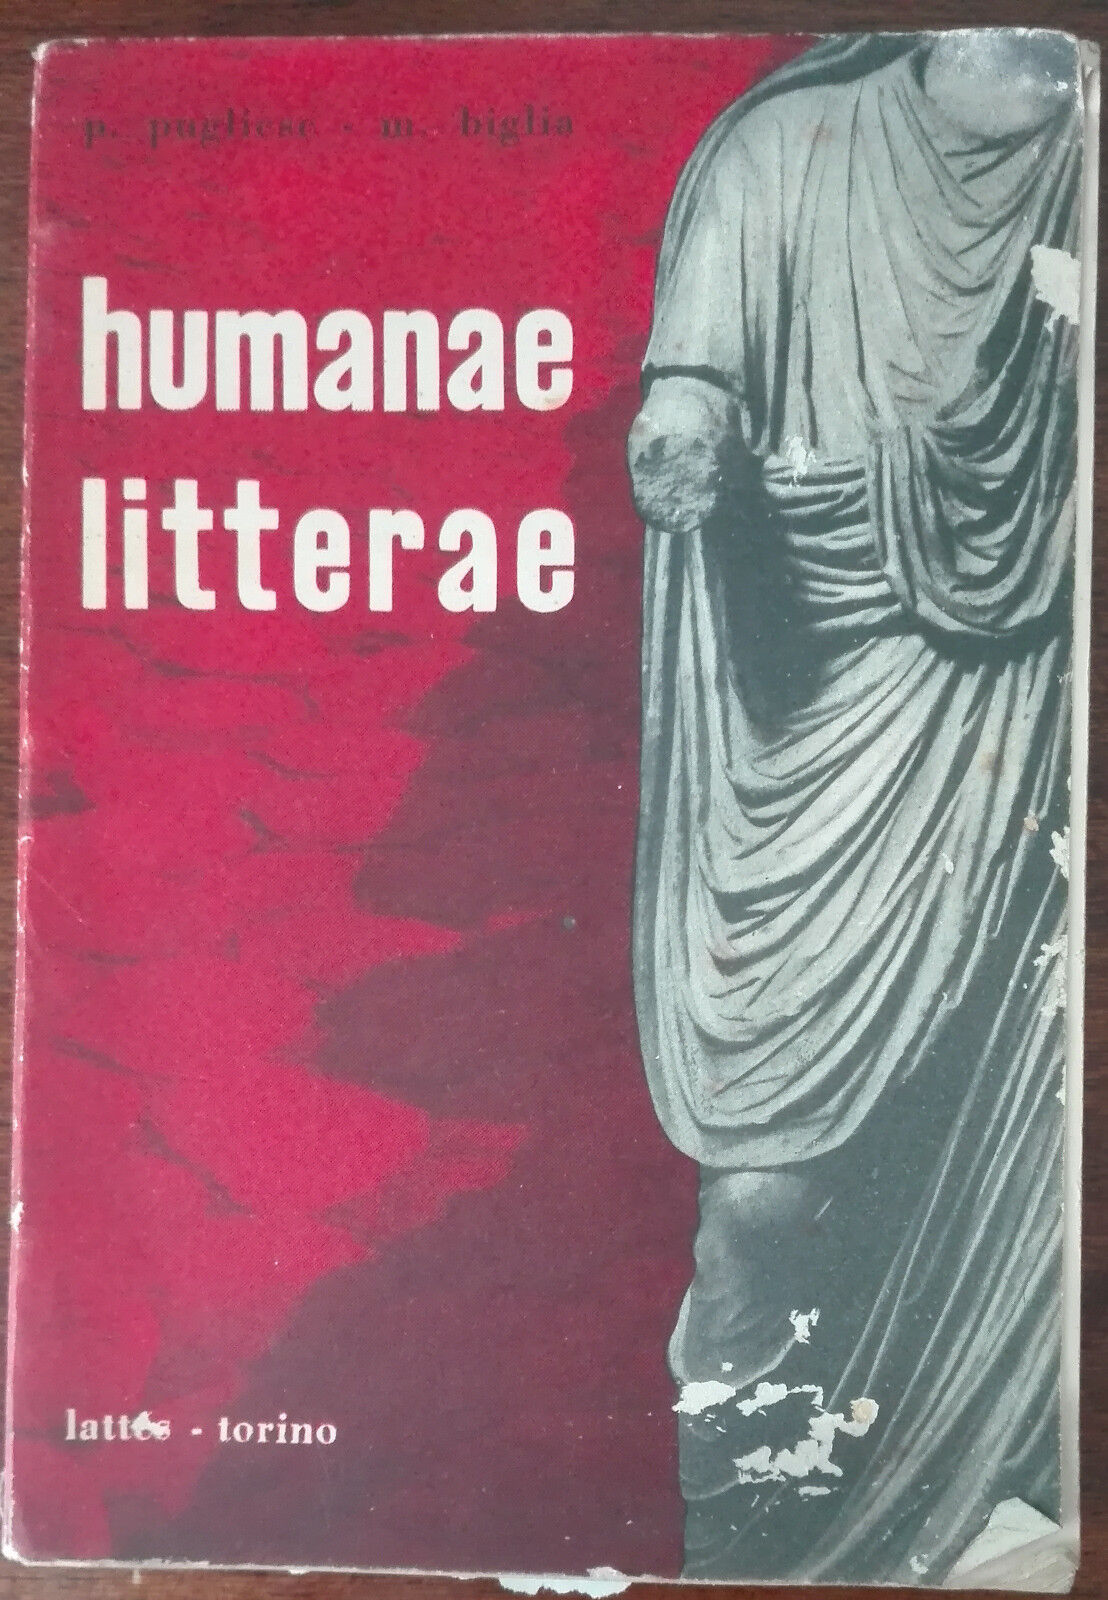 Humanae litterae - Pugliese, Biglia - Lattes - A